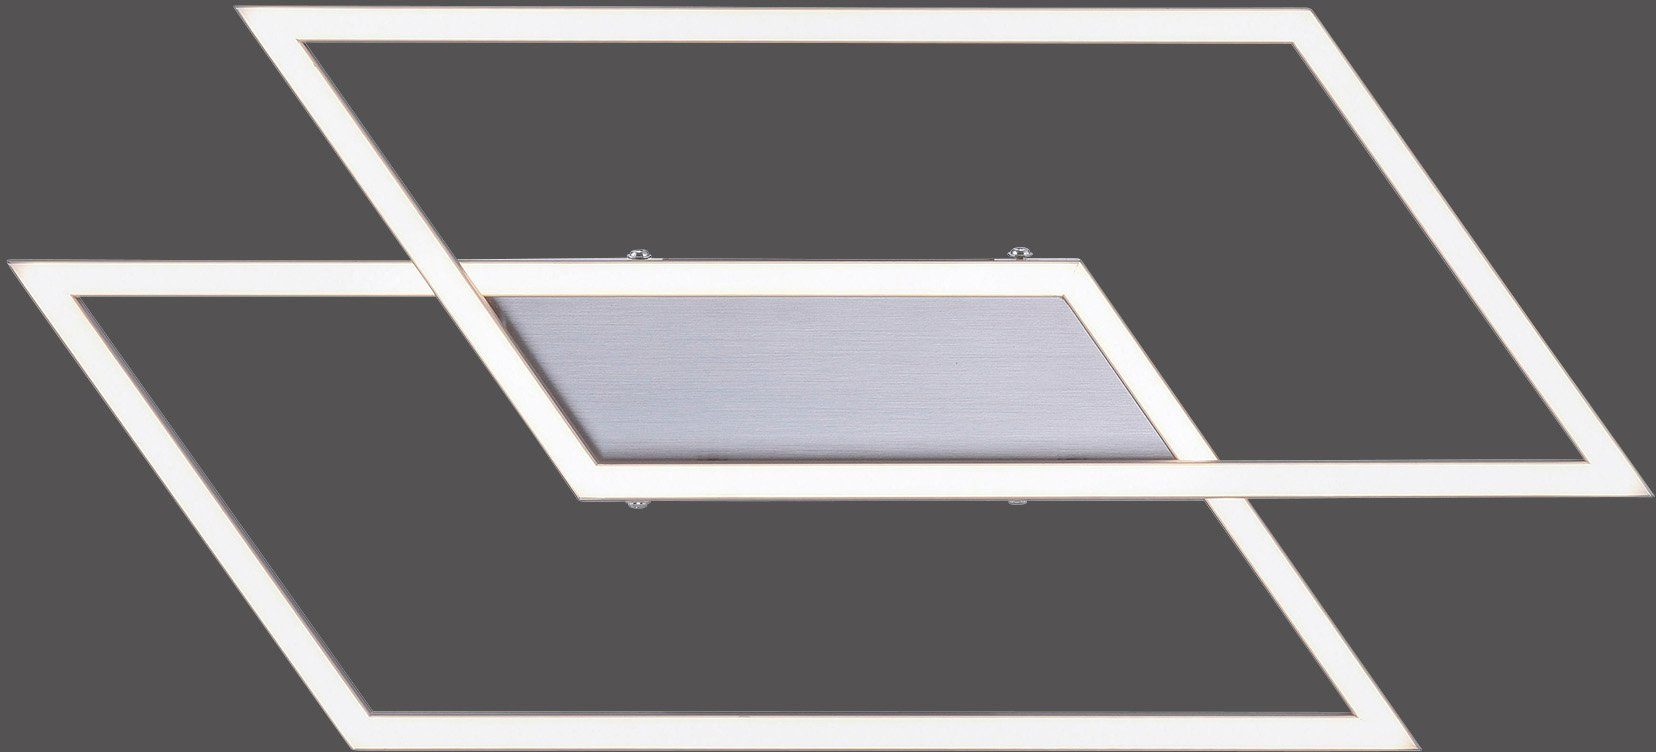 Paul Neuhaus LED Deckenleuchte LED Memoryfunktion, Wandschalter vorhandenen über dimmbar Dimmfunktion, fest Stufenlos Inigo, integriert, Warmweiß